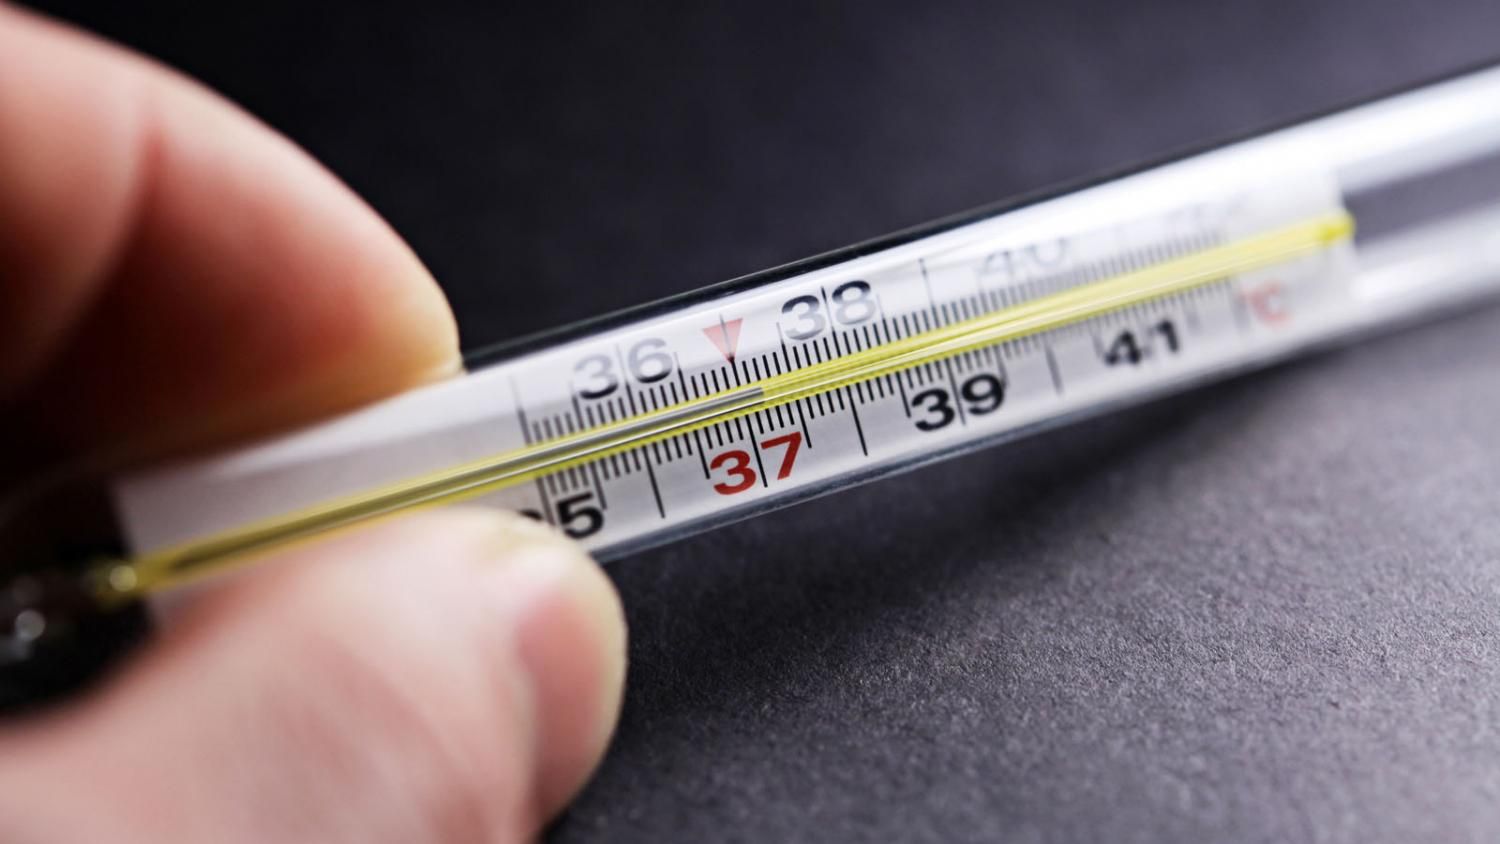 Ртутний чи інфрачервоний:  поради від Супрун щодо правильного вибору термометра 